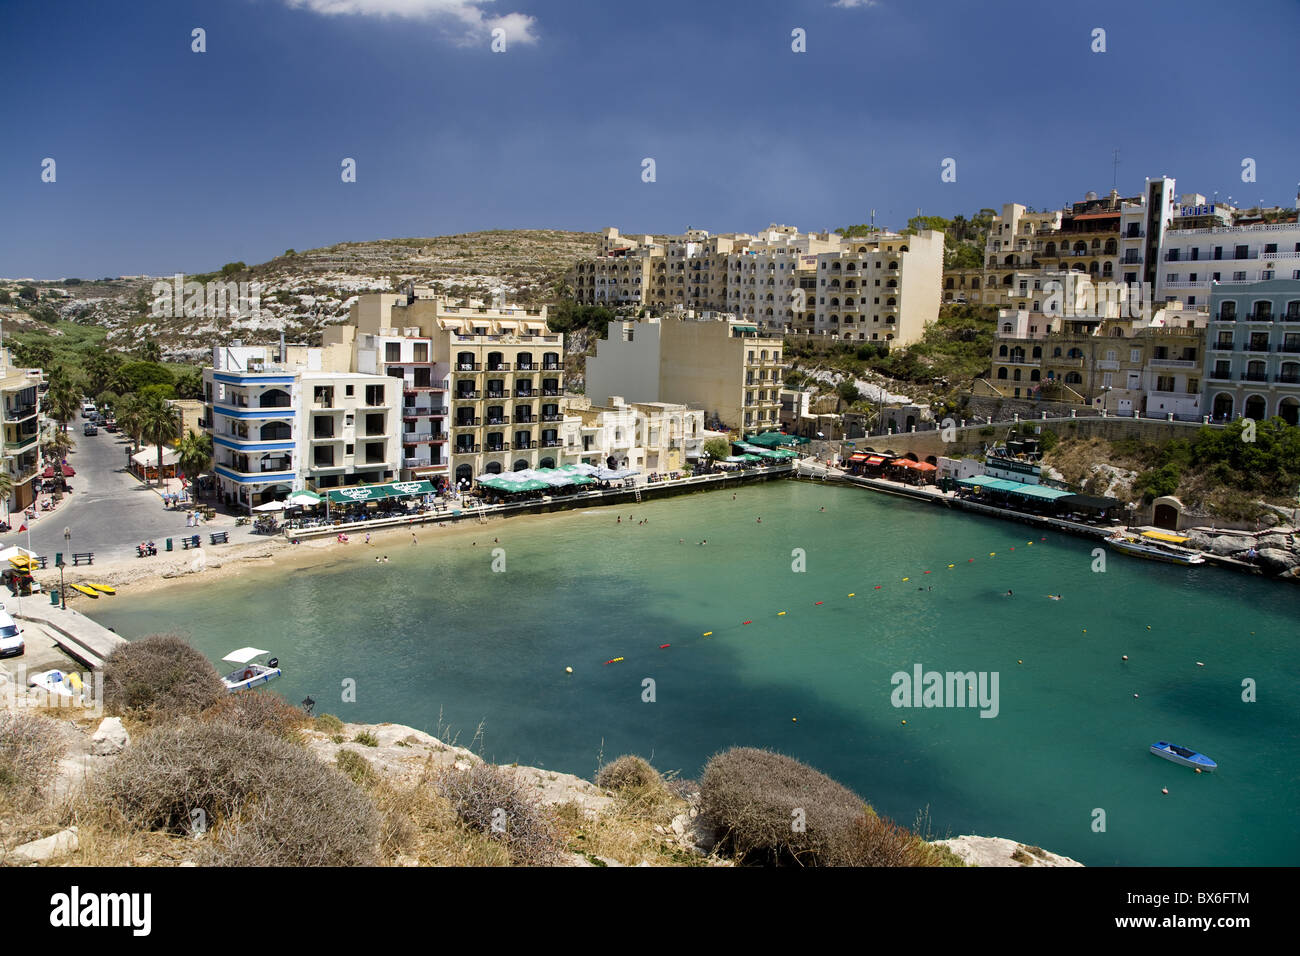 Le village de Marsalforn sur l'île de Gozo, Malte, Méditerranée, Europe Banque D'Images